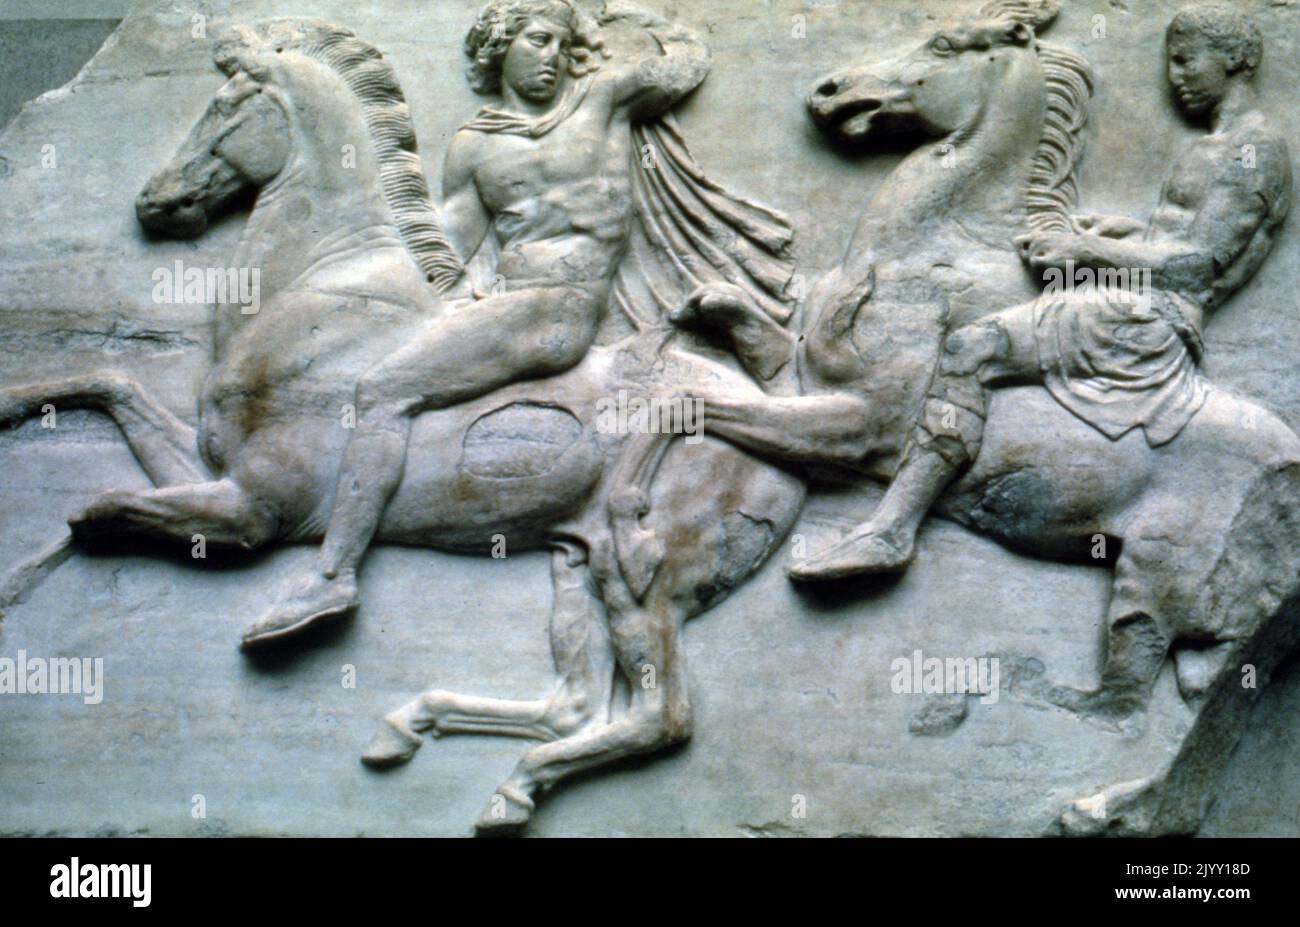 Cavalieri raffigurati in un rilievo marmoreo. Periodo classico, 480-323 a.C. Partenone West Frieze Foto Stock